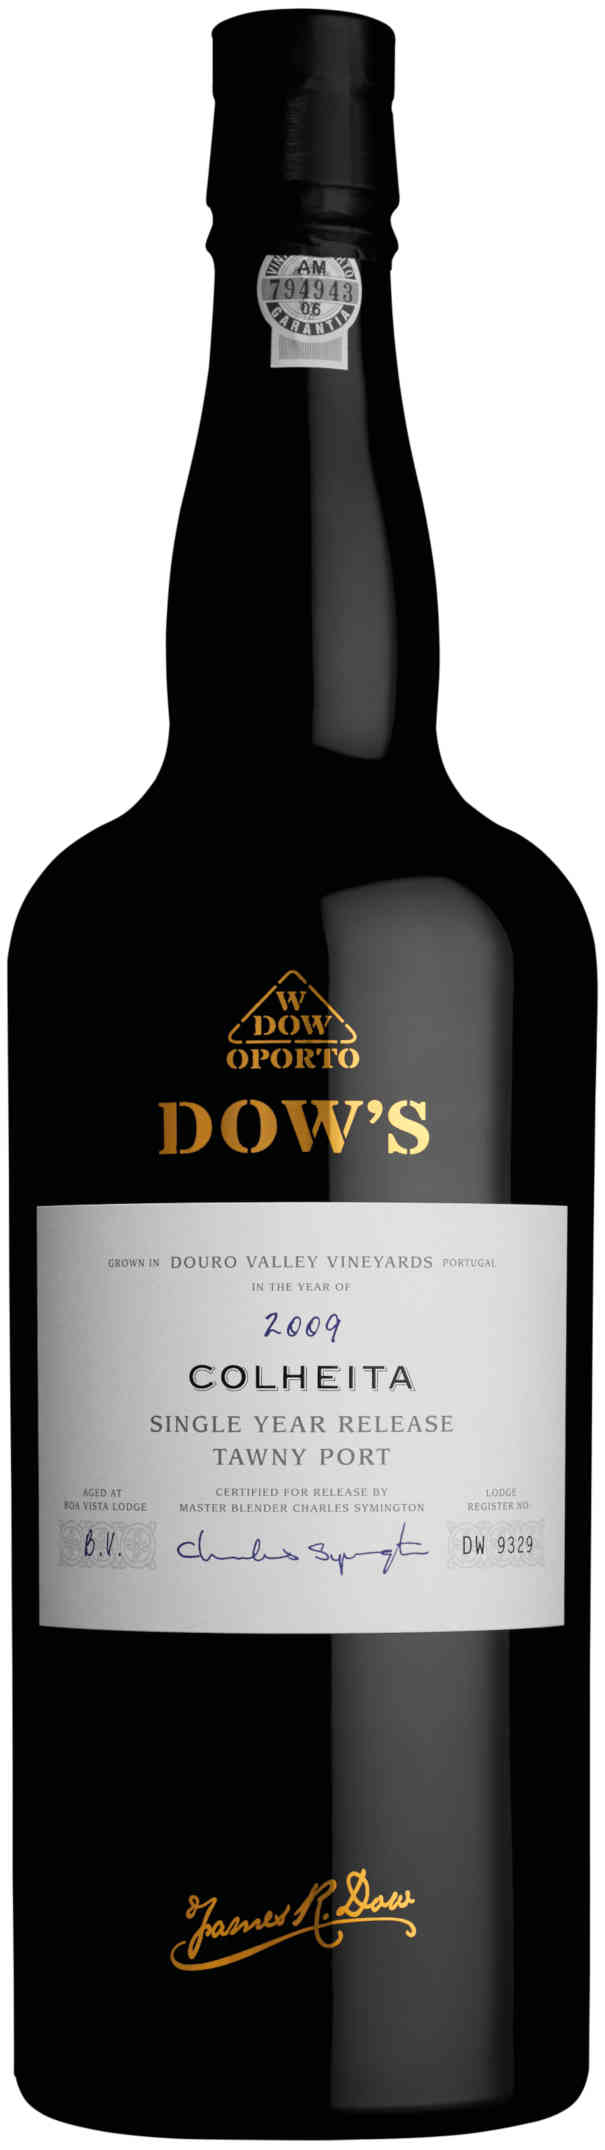 Dows-Colheita-Port-2009-225cl